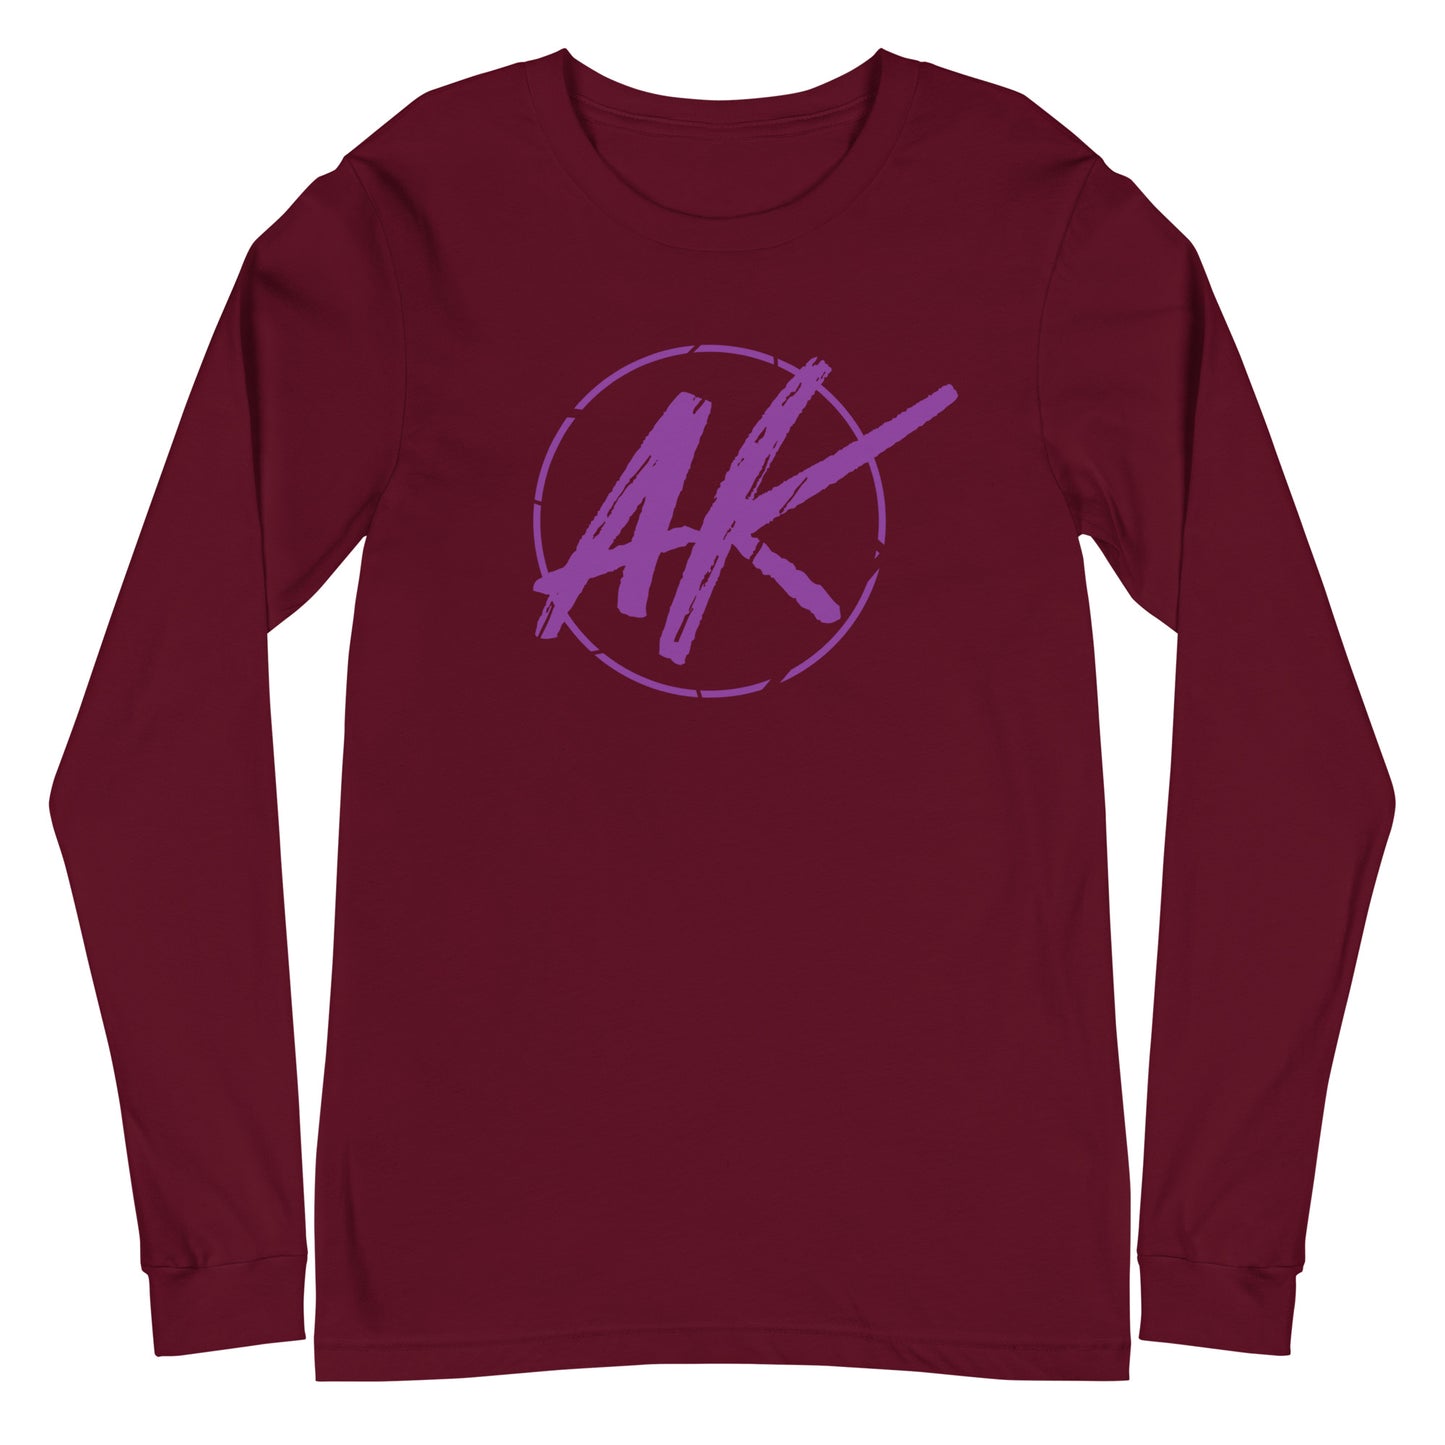 AK - Unisex Long Sleeve (purple)